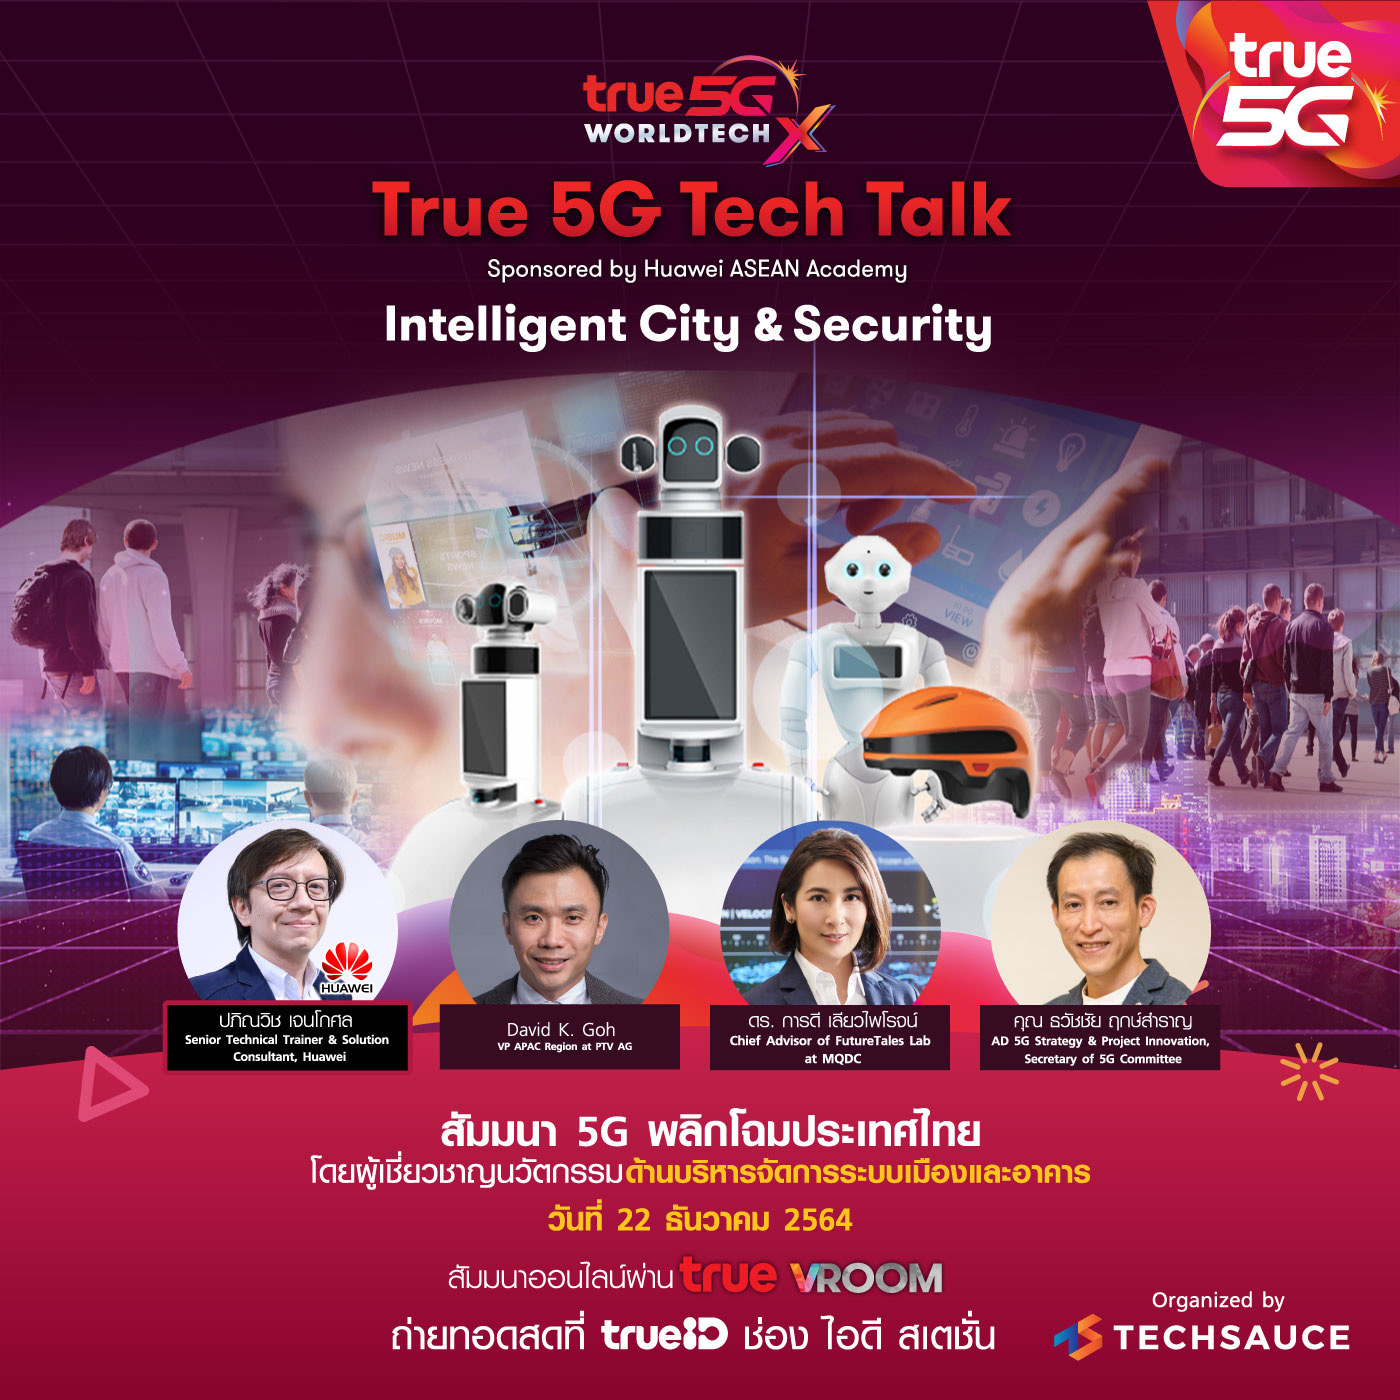 ทรู 5G ดีเดย์จัดงาน True 5G Innovation Community ชวนคนยุคดิจิทัล ร่วมสัมมนา 5G พลิกโฉมประเทศไทย “True 5G Tech Talk” ฟังมุมมองกูรูทั้งในและต่างประเทศด้านบริหารจัดการเมืองและอาคาร พัฒนาเมืองอัจฉริยะ